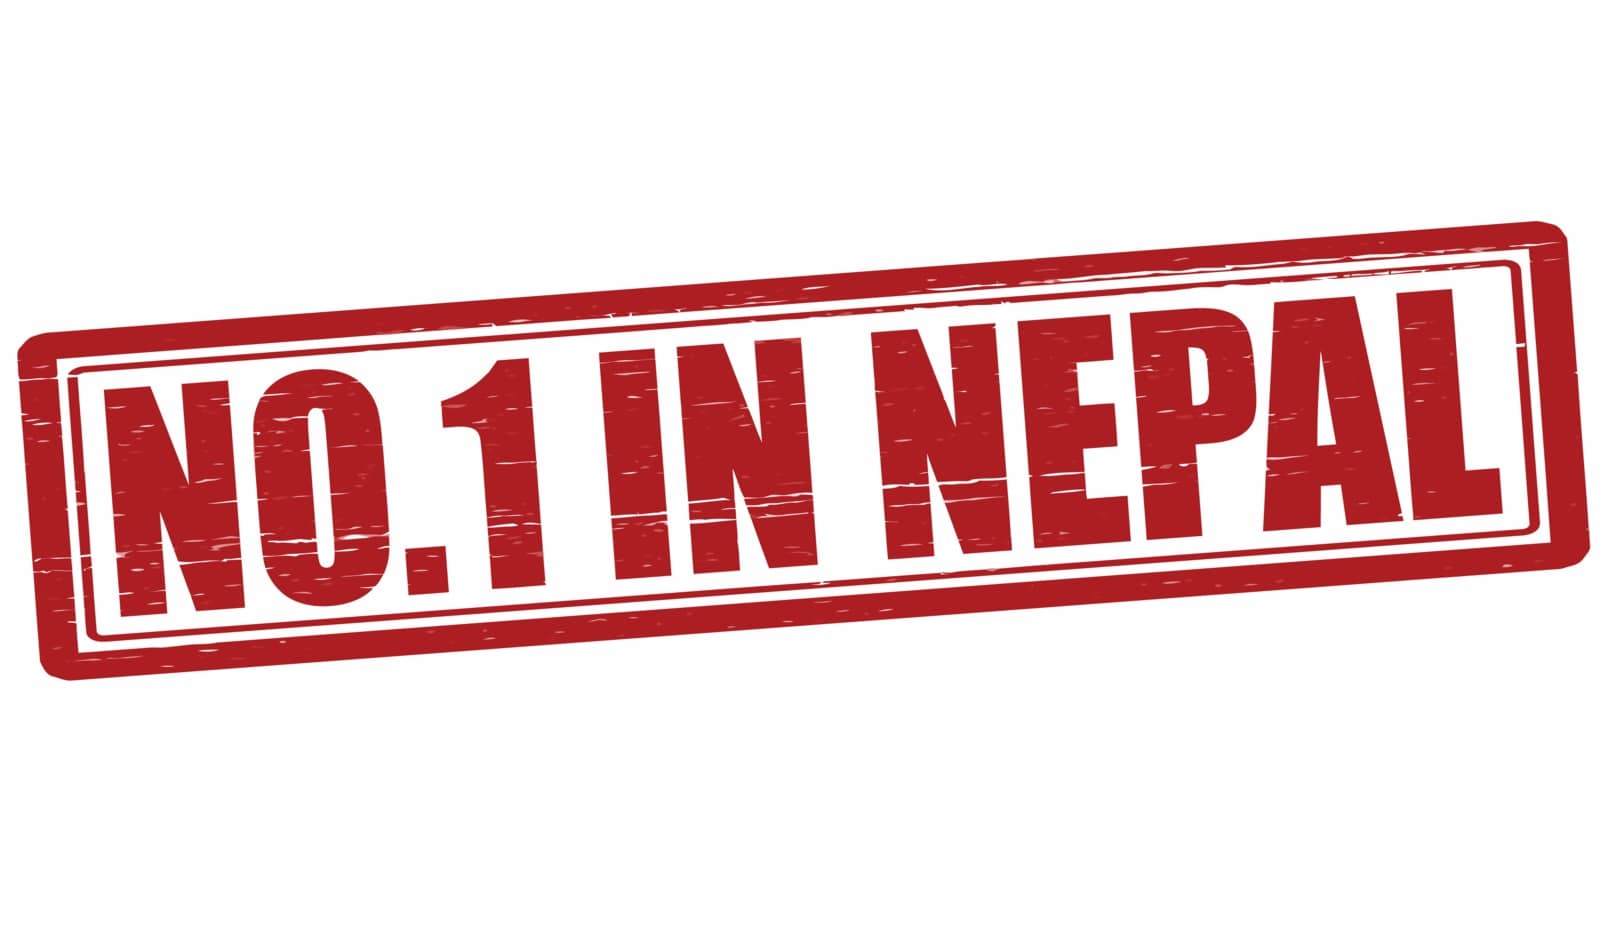 No one in Nepal by carmenbobo